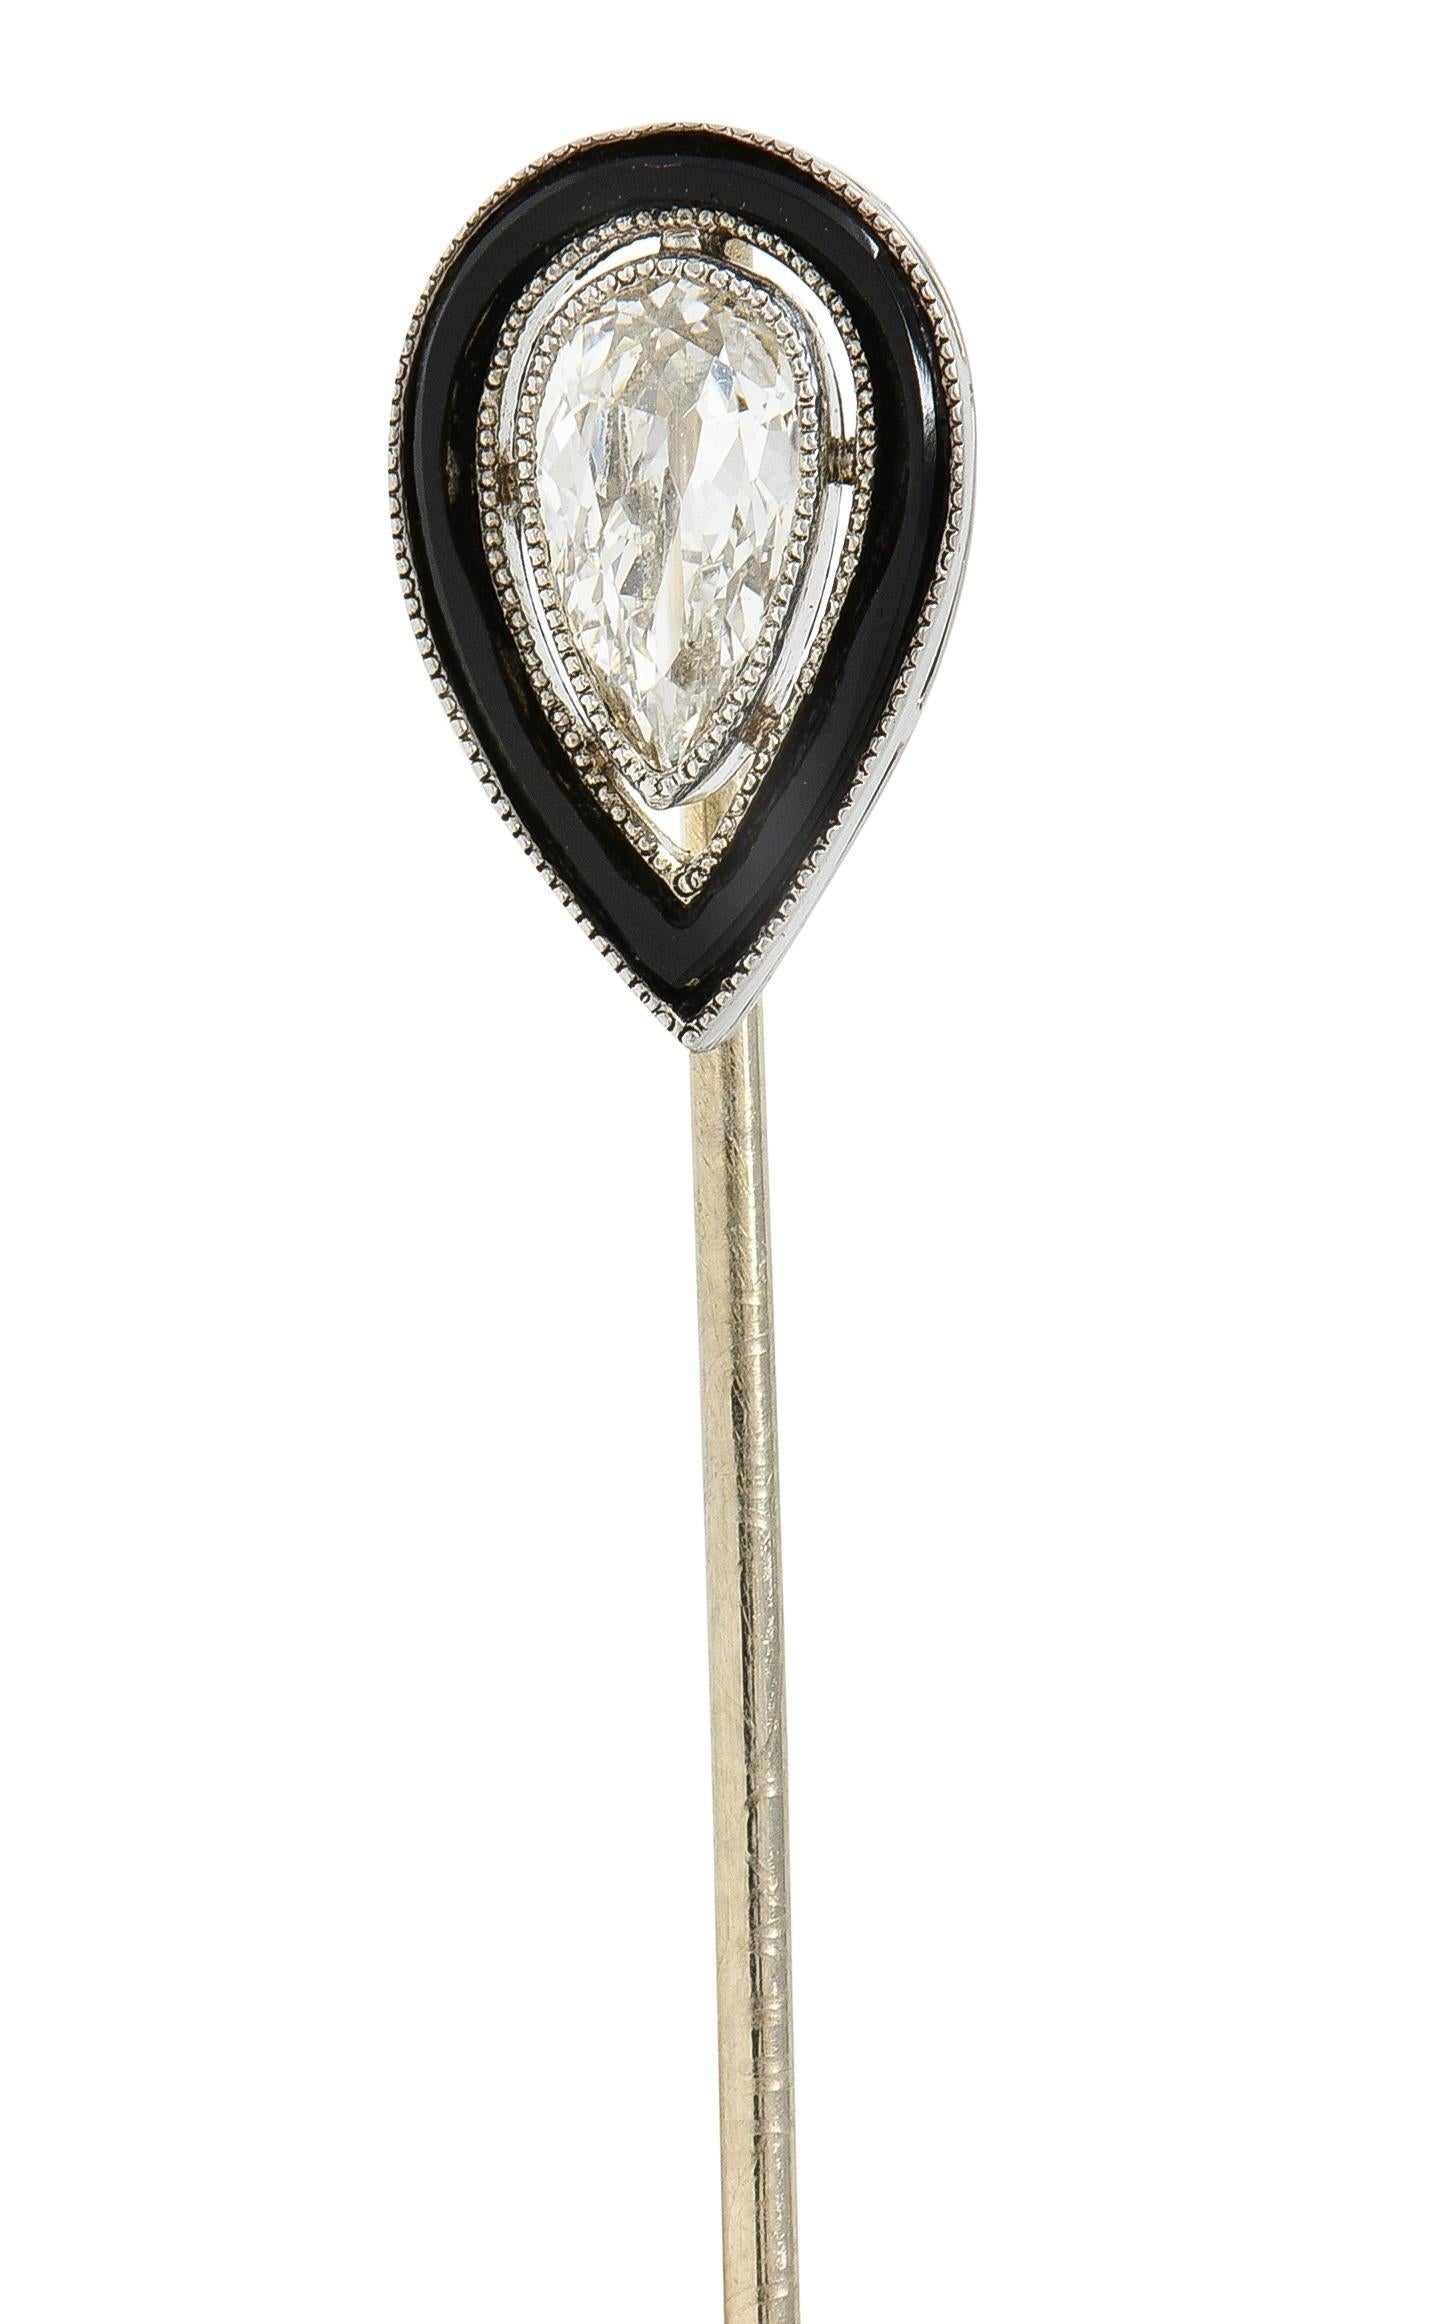 In der Mitte ein Diamant im Birnenschliff mit einem Gewicht von etwa 0,30 Karat - Farbe K mit Reinheit SI1
Lünette mit Miligrain-Detail und durchbrochener, schwebender Halo-Einfassung 
Intarsien aus Onyx - undurchsichtig glänzend schwarz